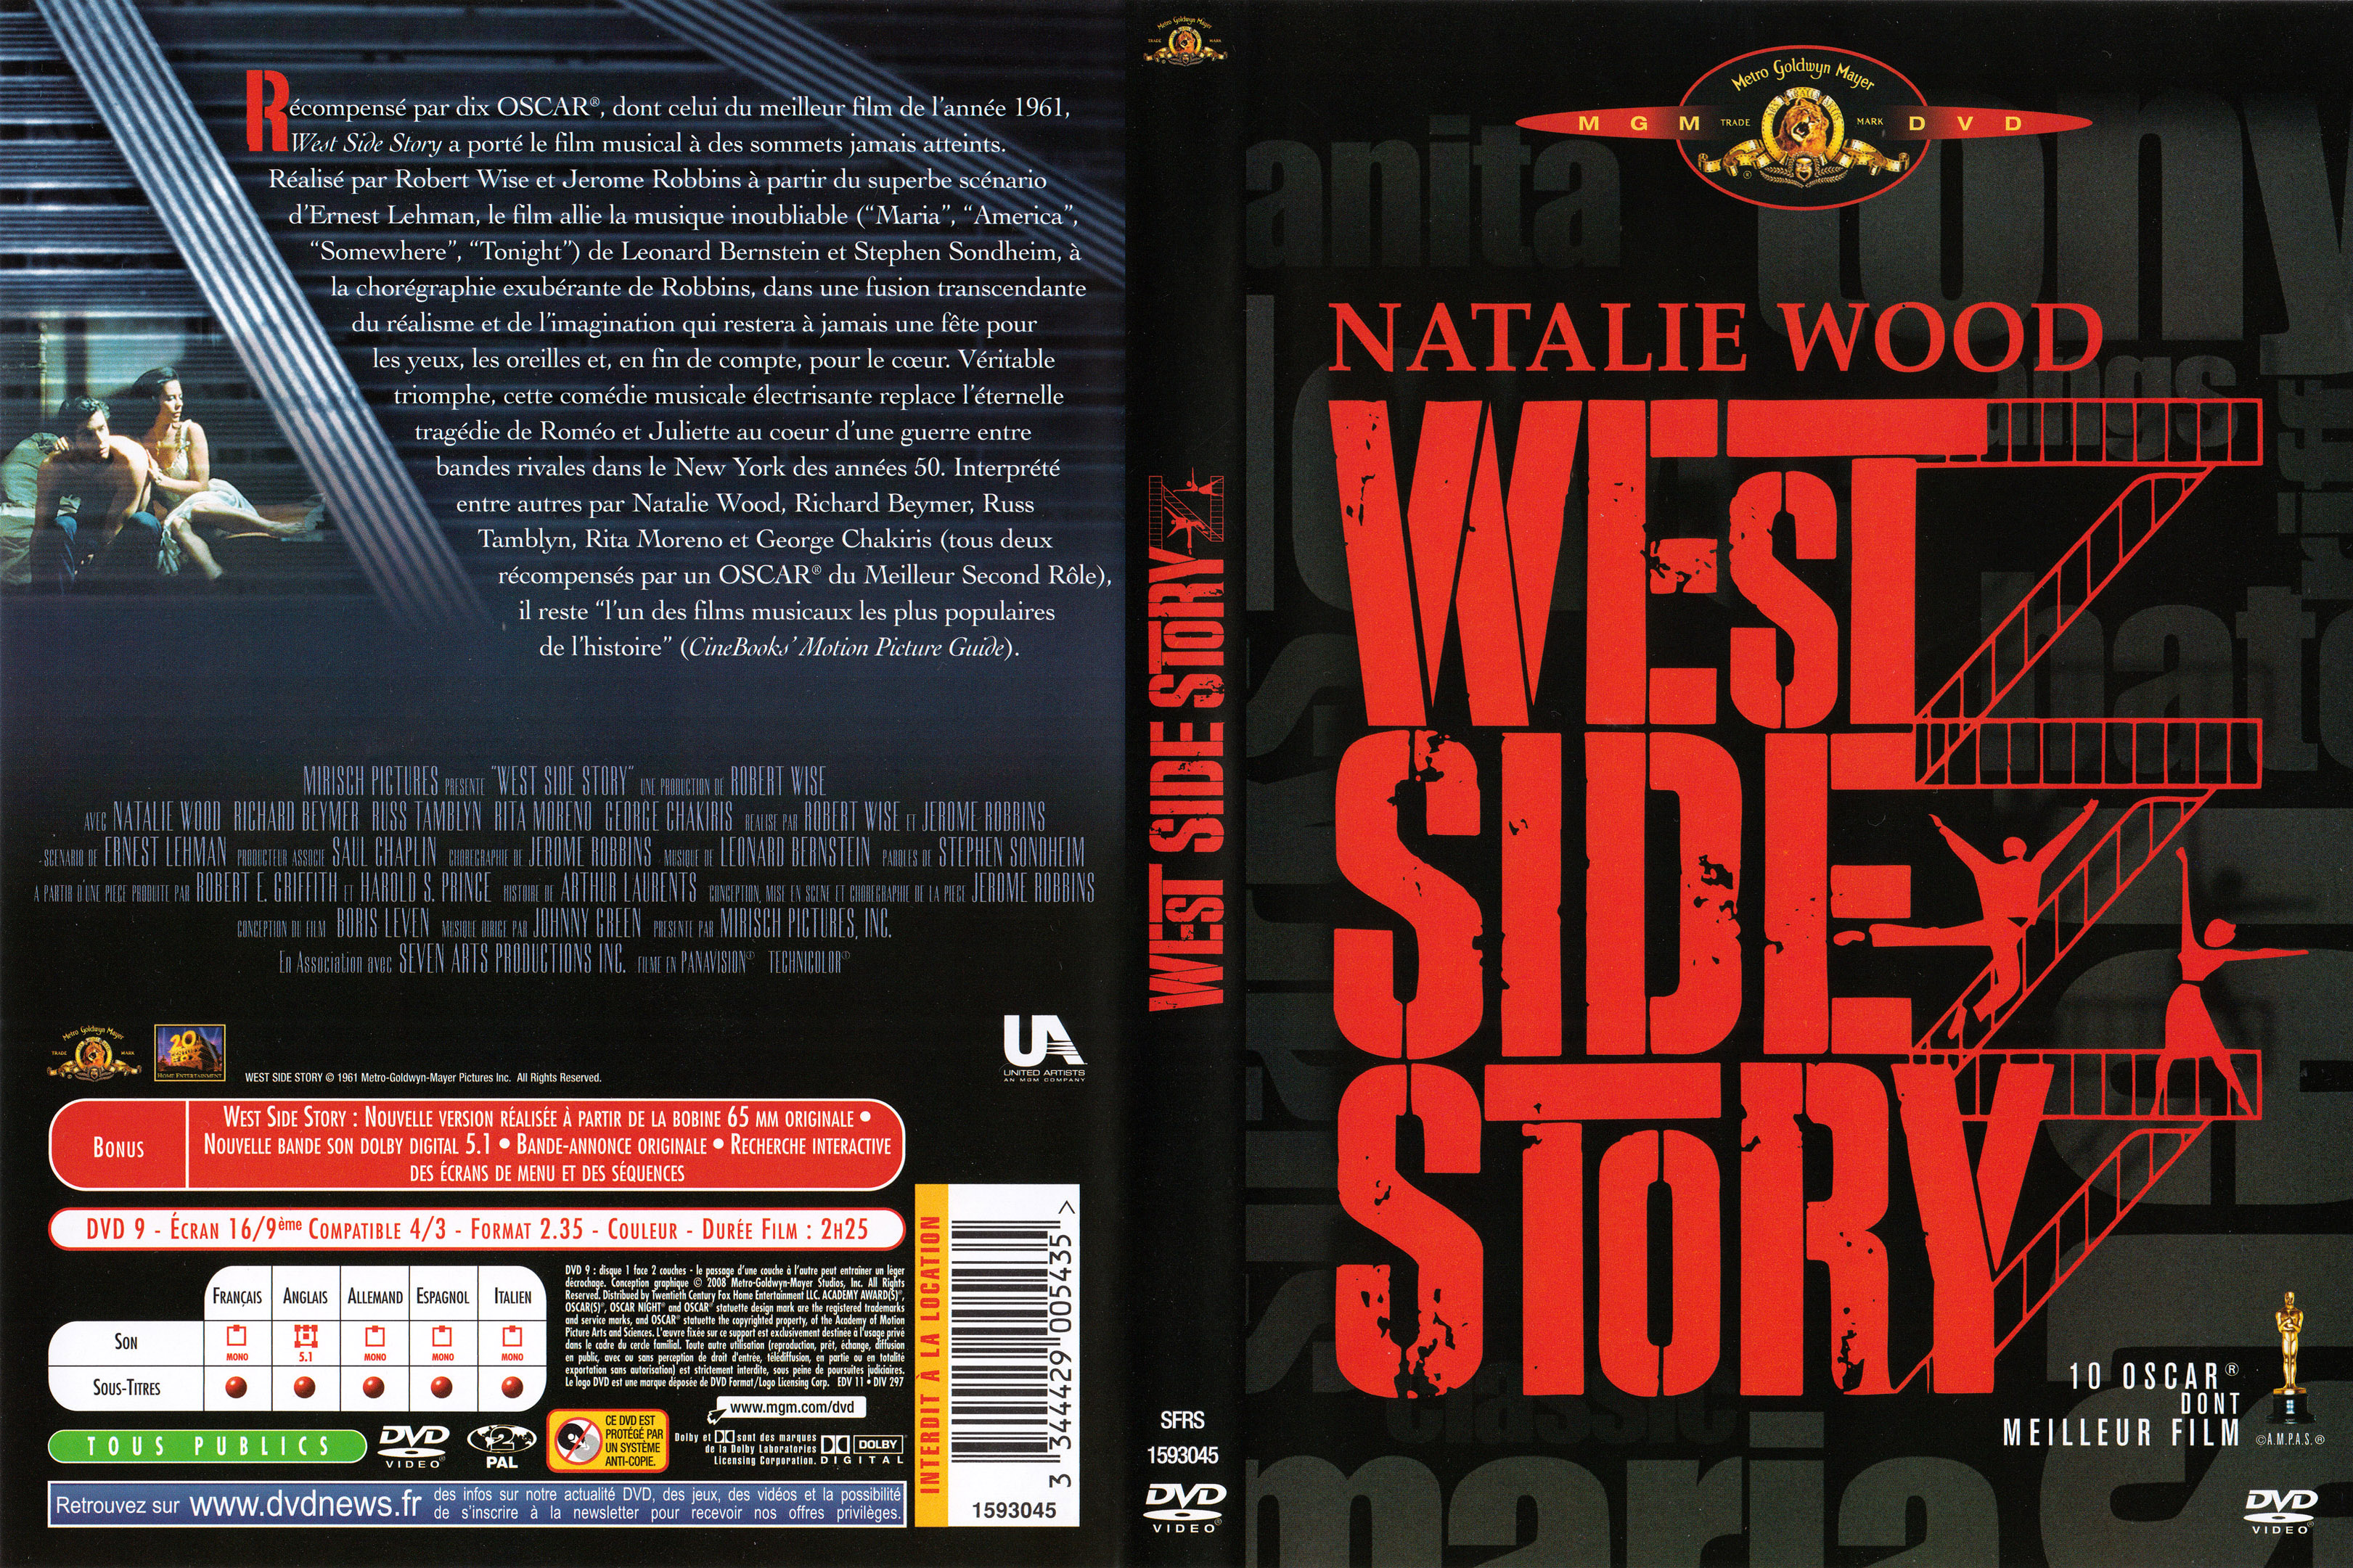 Jaquette DVD West side story v3